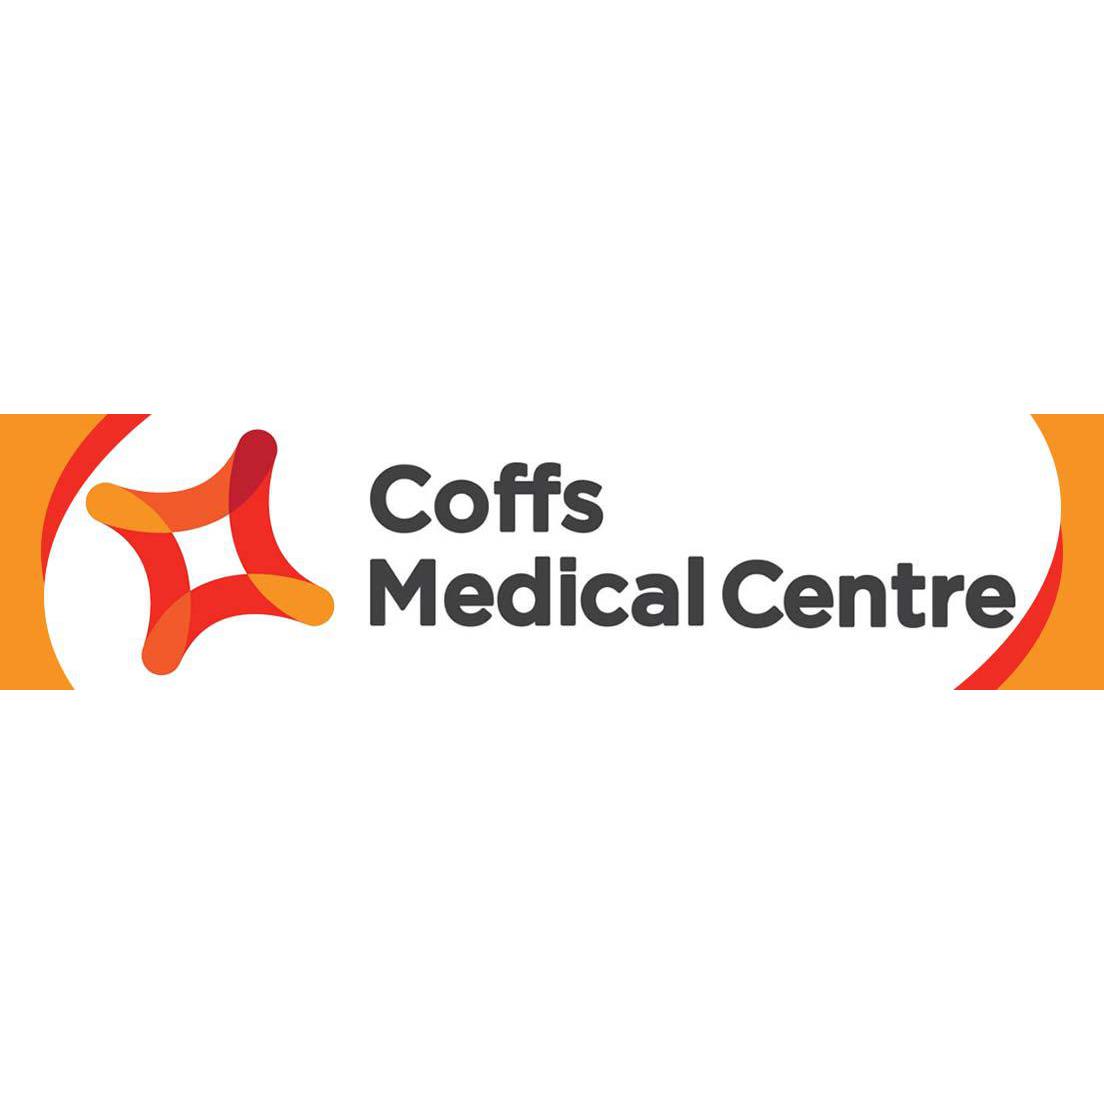 Coffs Medical Centre - Coffs Harbour, NSW 2450 - (02) 6648 5222 | ShowMeLocal.com